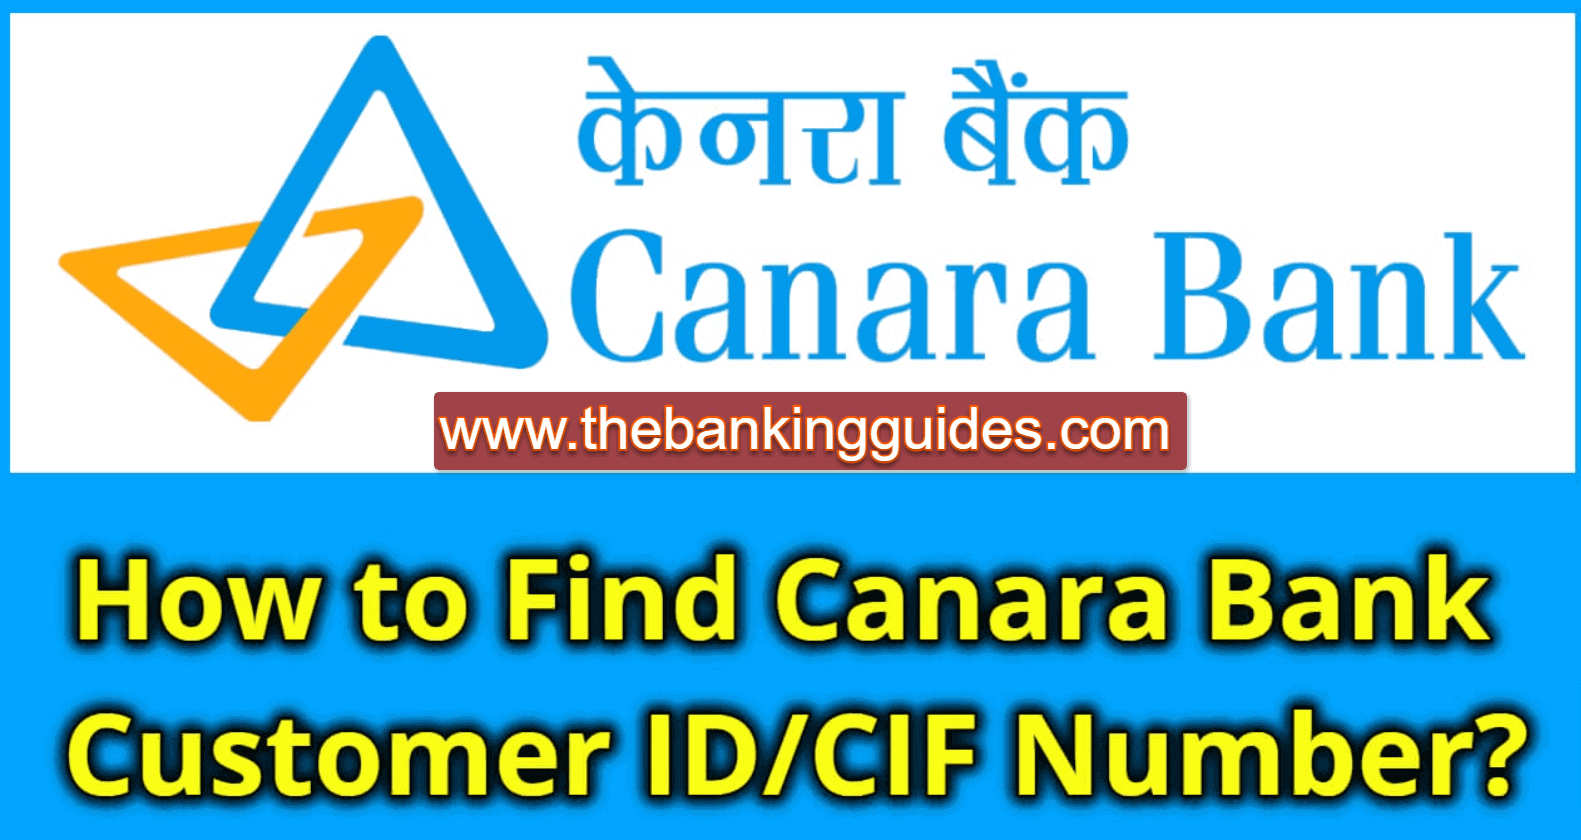 Canara Bank Customer Id in 5 ways